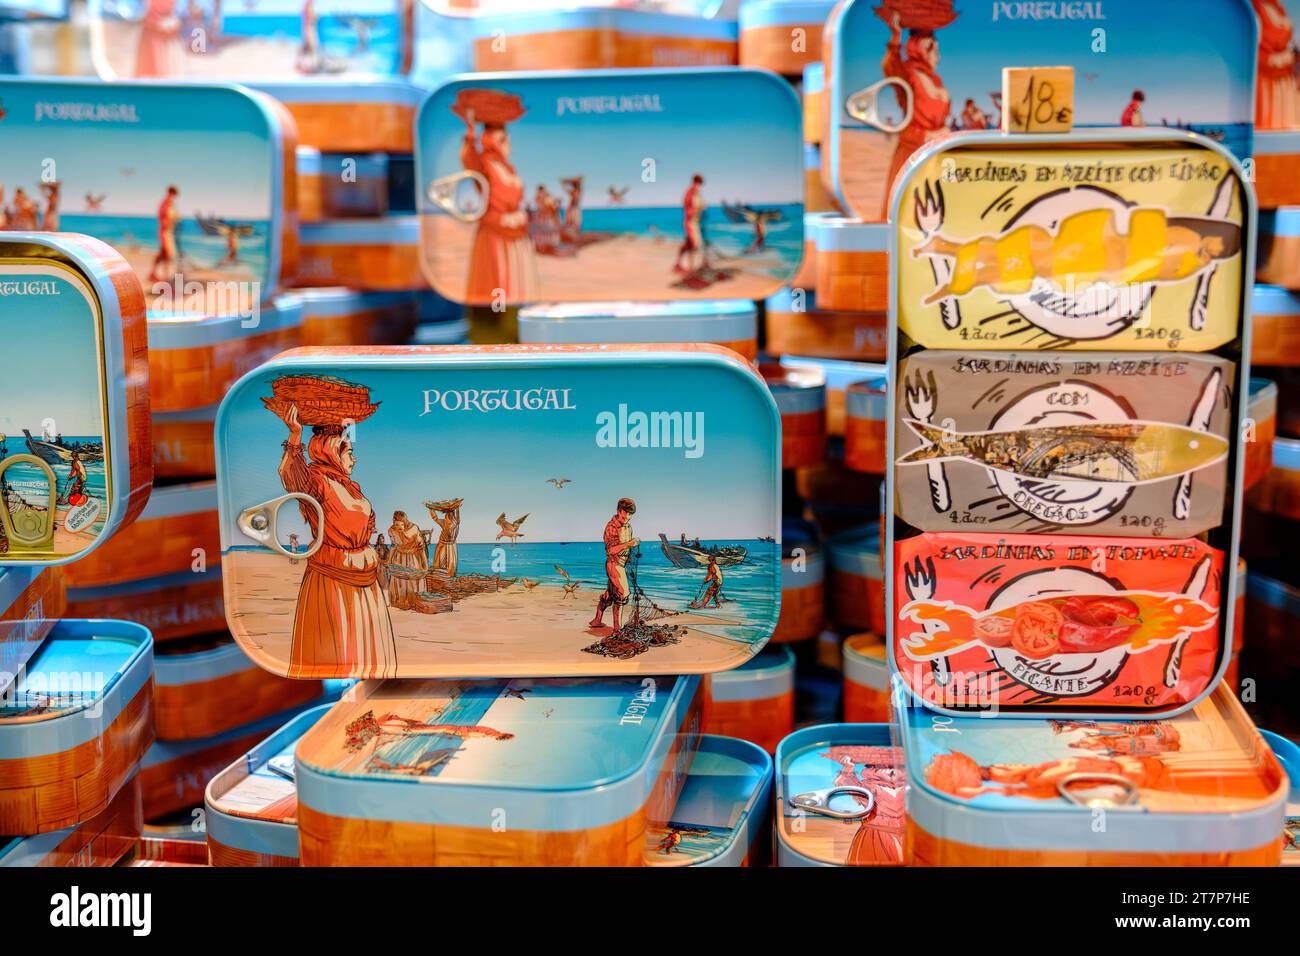 Canettes de sardines portugaises fantaisie, souvenirs, marché Bolhao, Porto, Portugal Banque D'Images